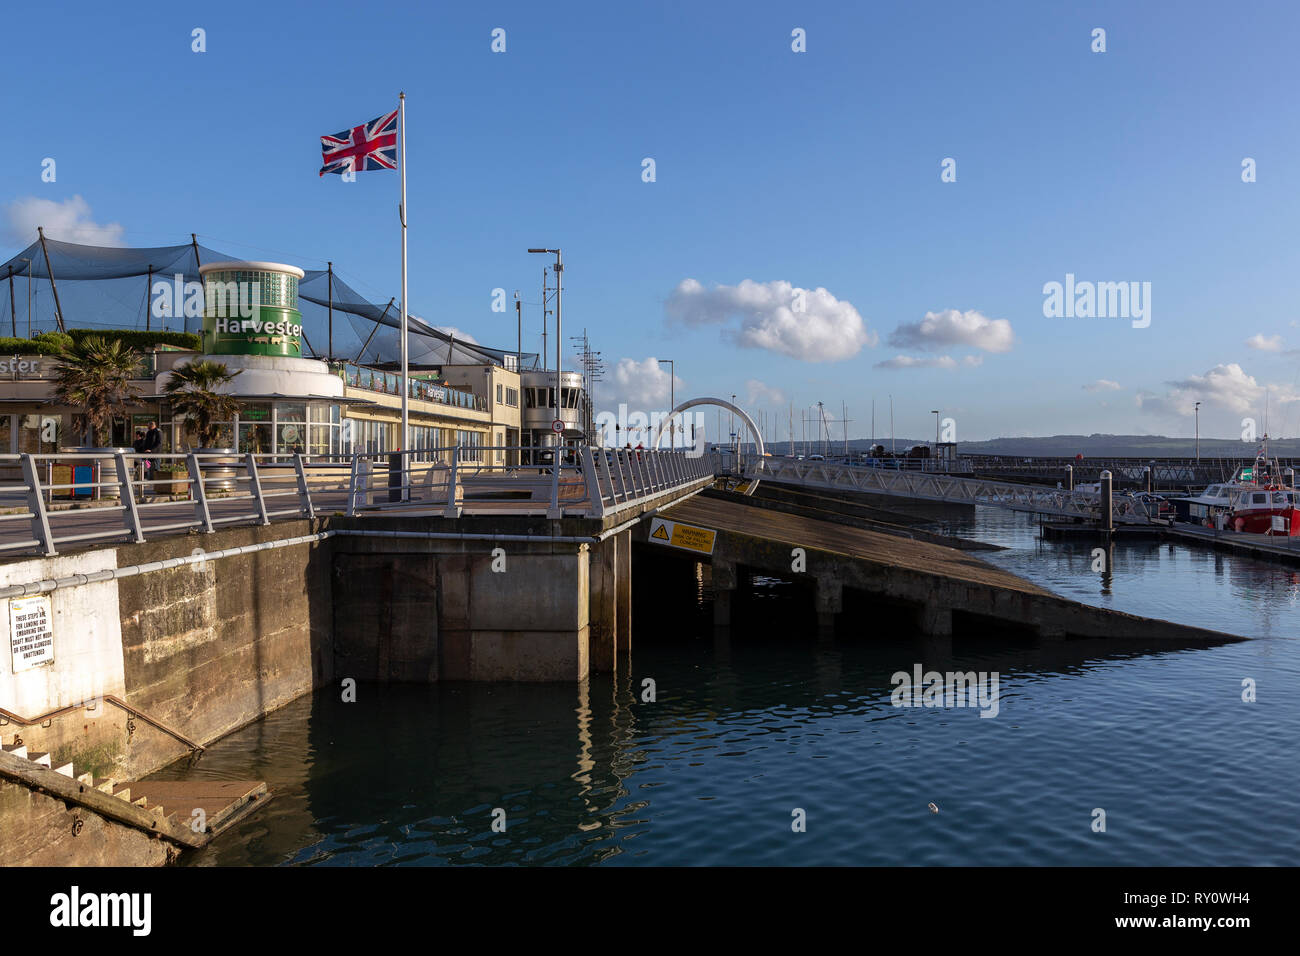 Torquay - Inghilterra, Devon, Inghilterra, Porto, immagine a colori, copia, spazio orizzontale, Memorial imbarco rampe D-Day Beacon Quay Foto Stock